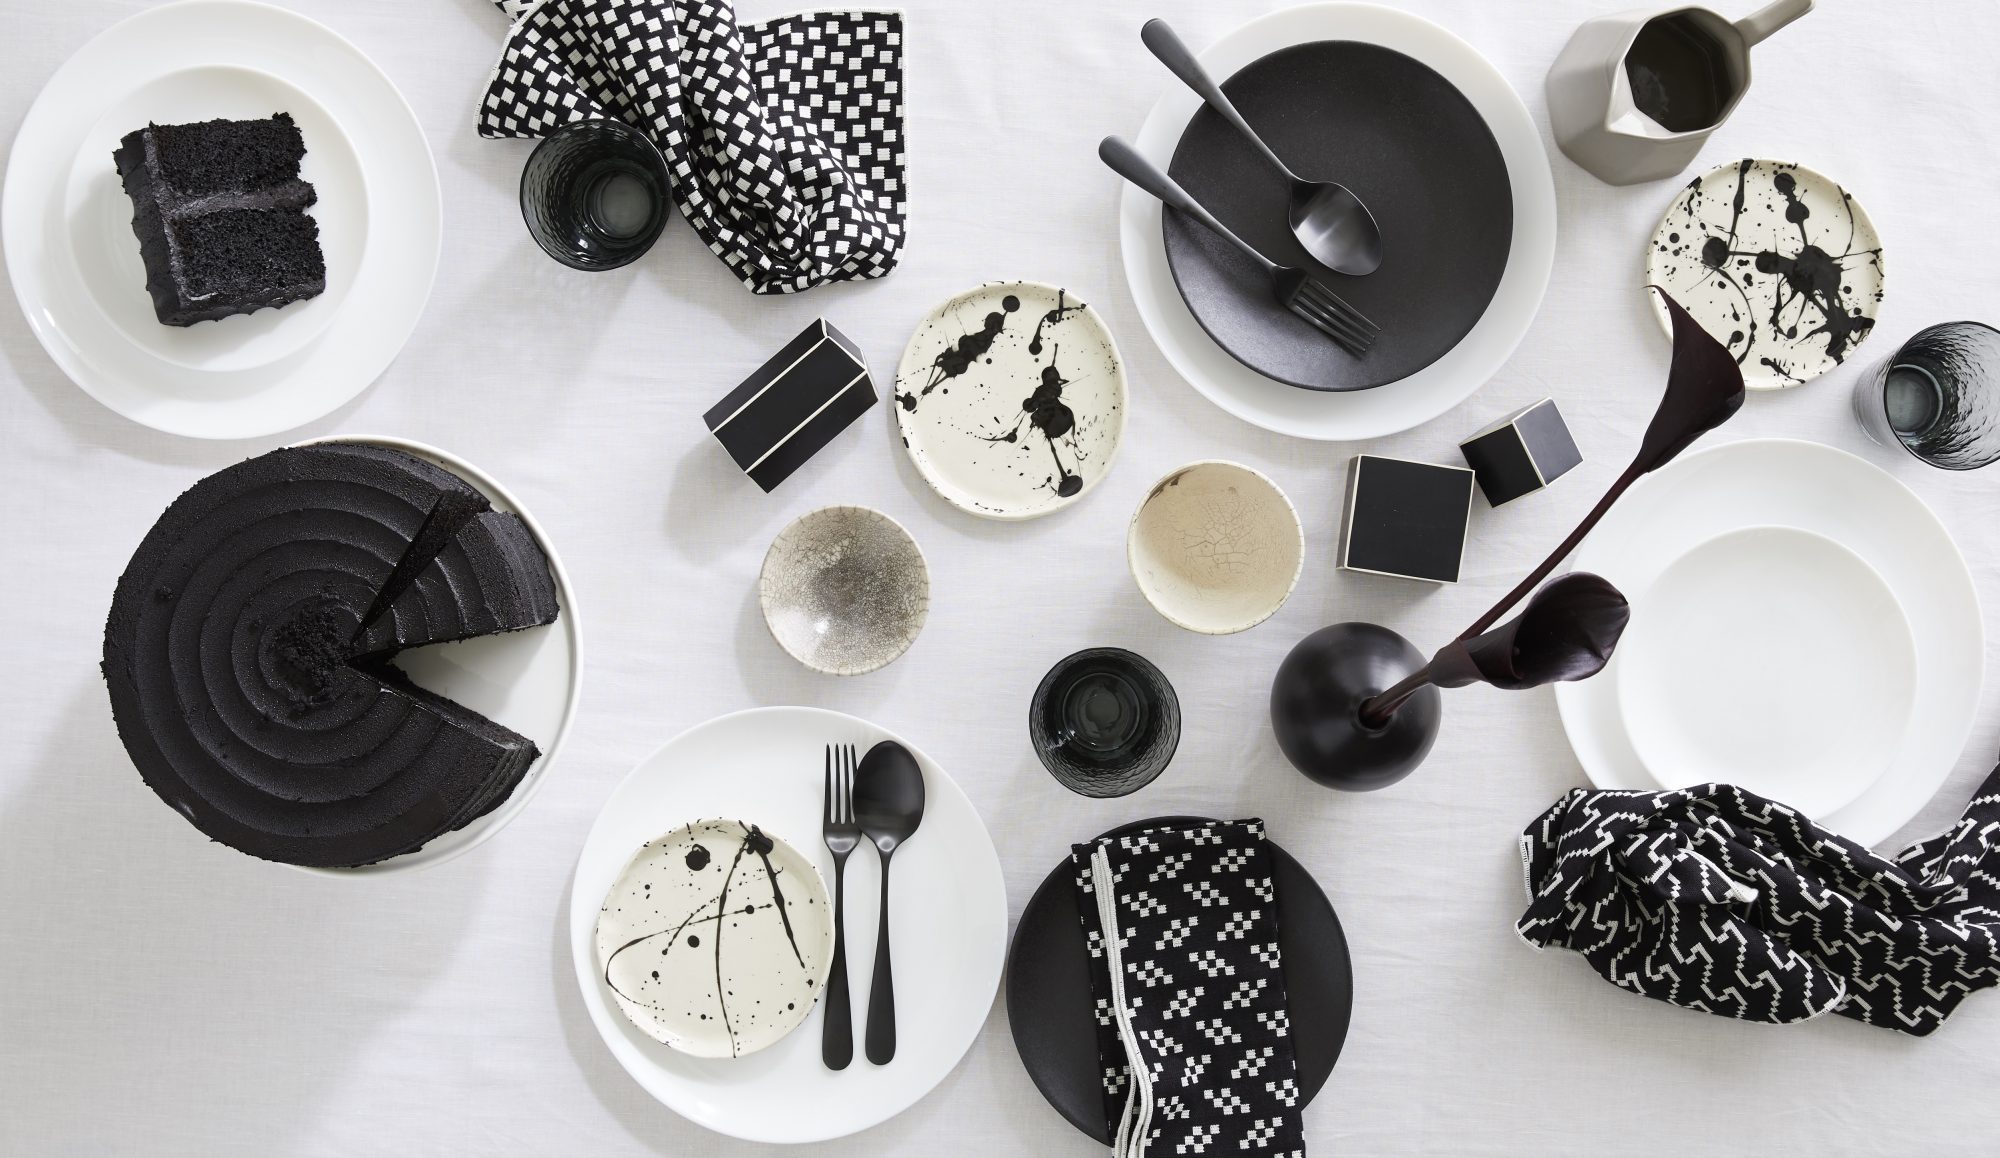 طرح میزآرایی با ظروف سفید و سیاه